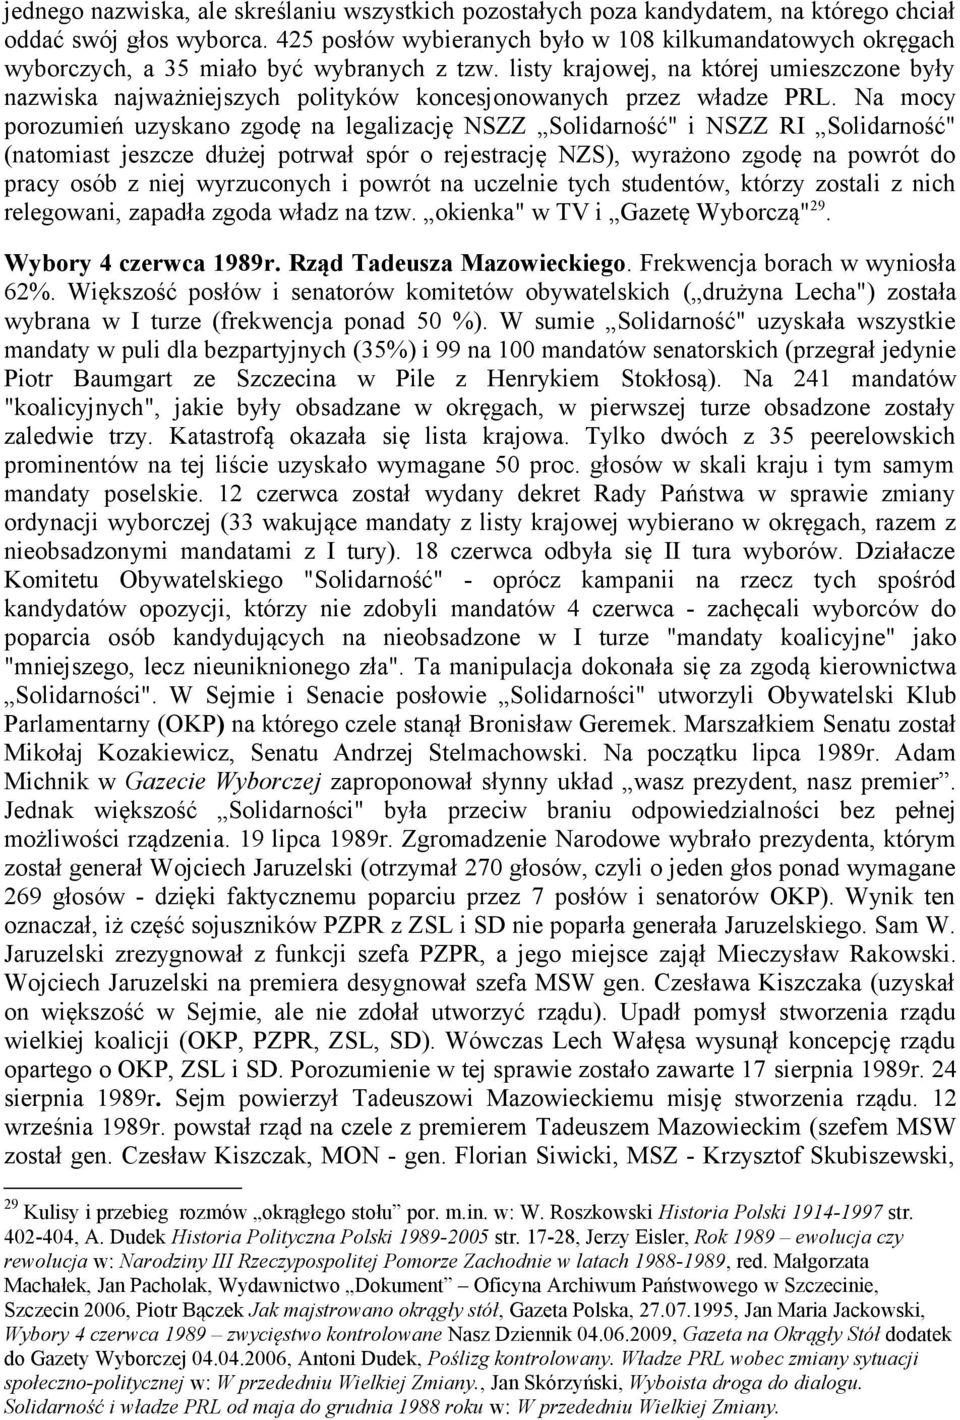 listy krajowej, na której umieszczone były nazwiska najważniejszych polityków koncesjonowanych przez władze PRL.